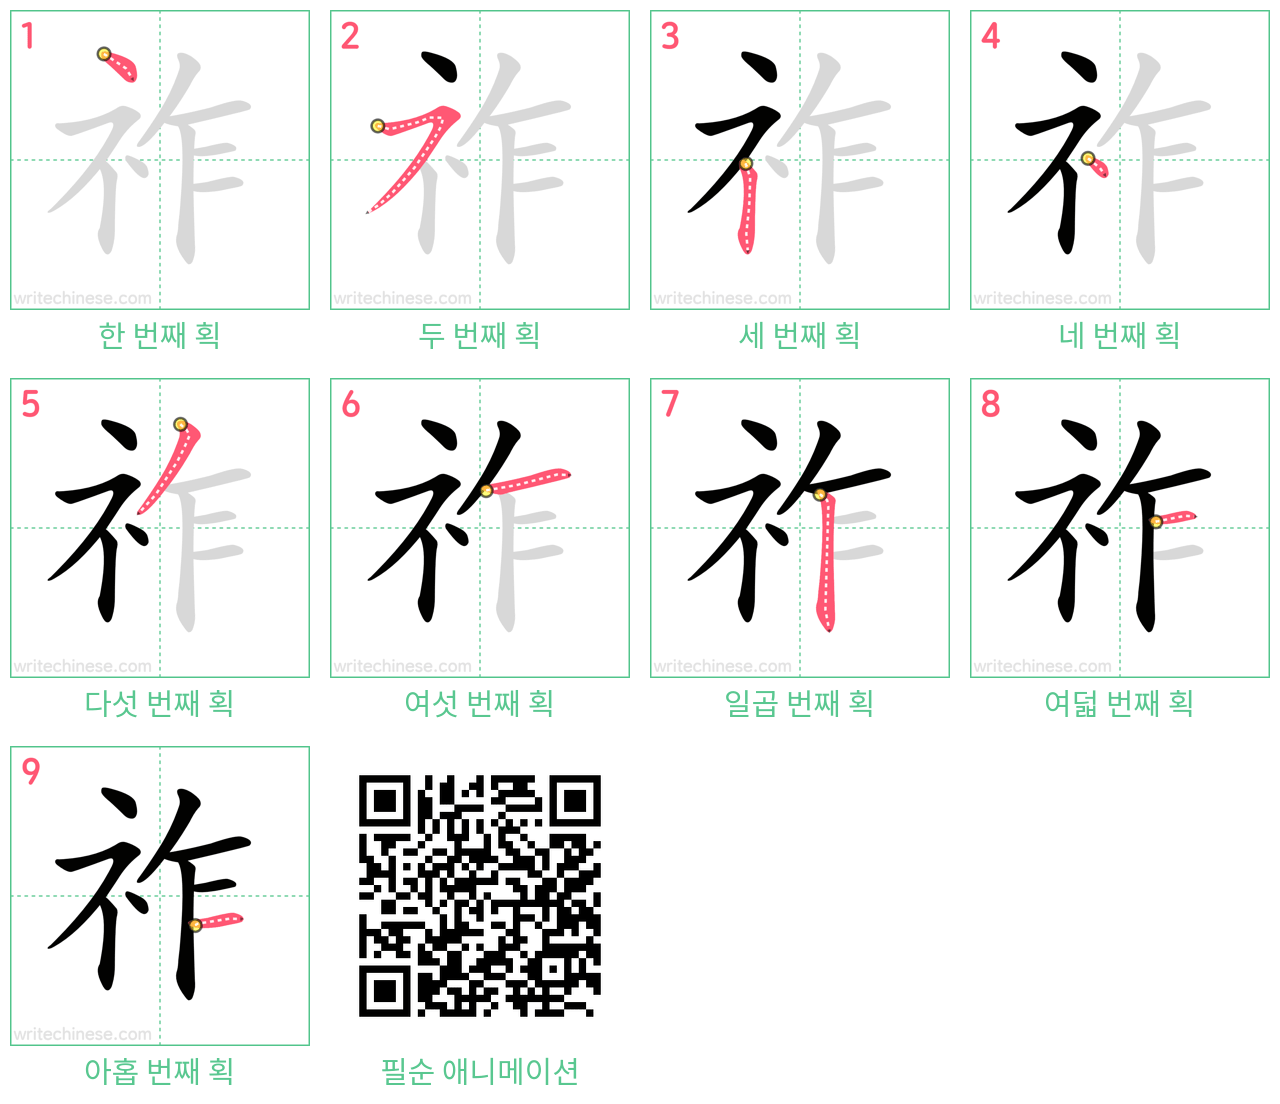 祚 step-by-step stroke order diagrams